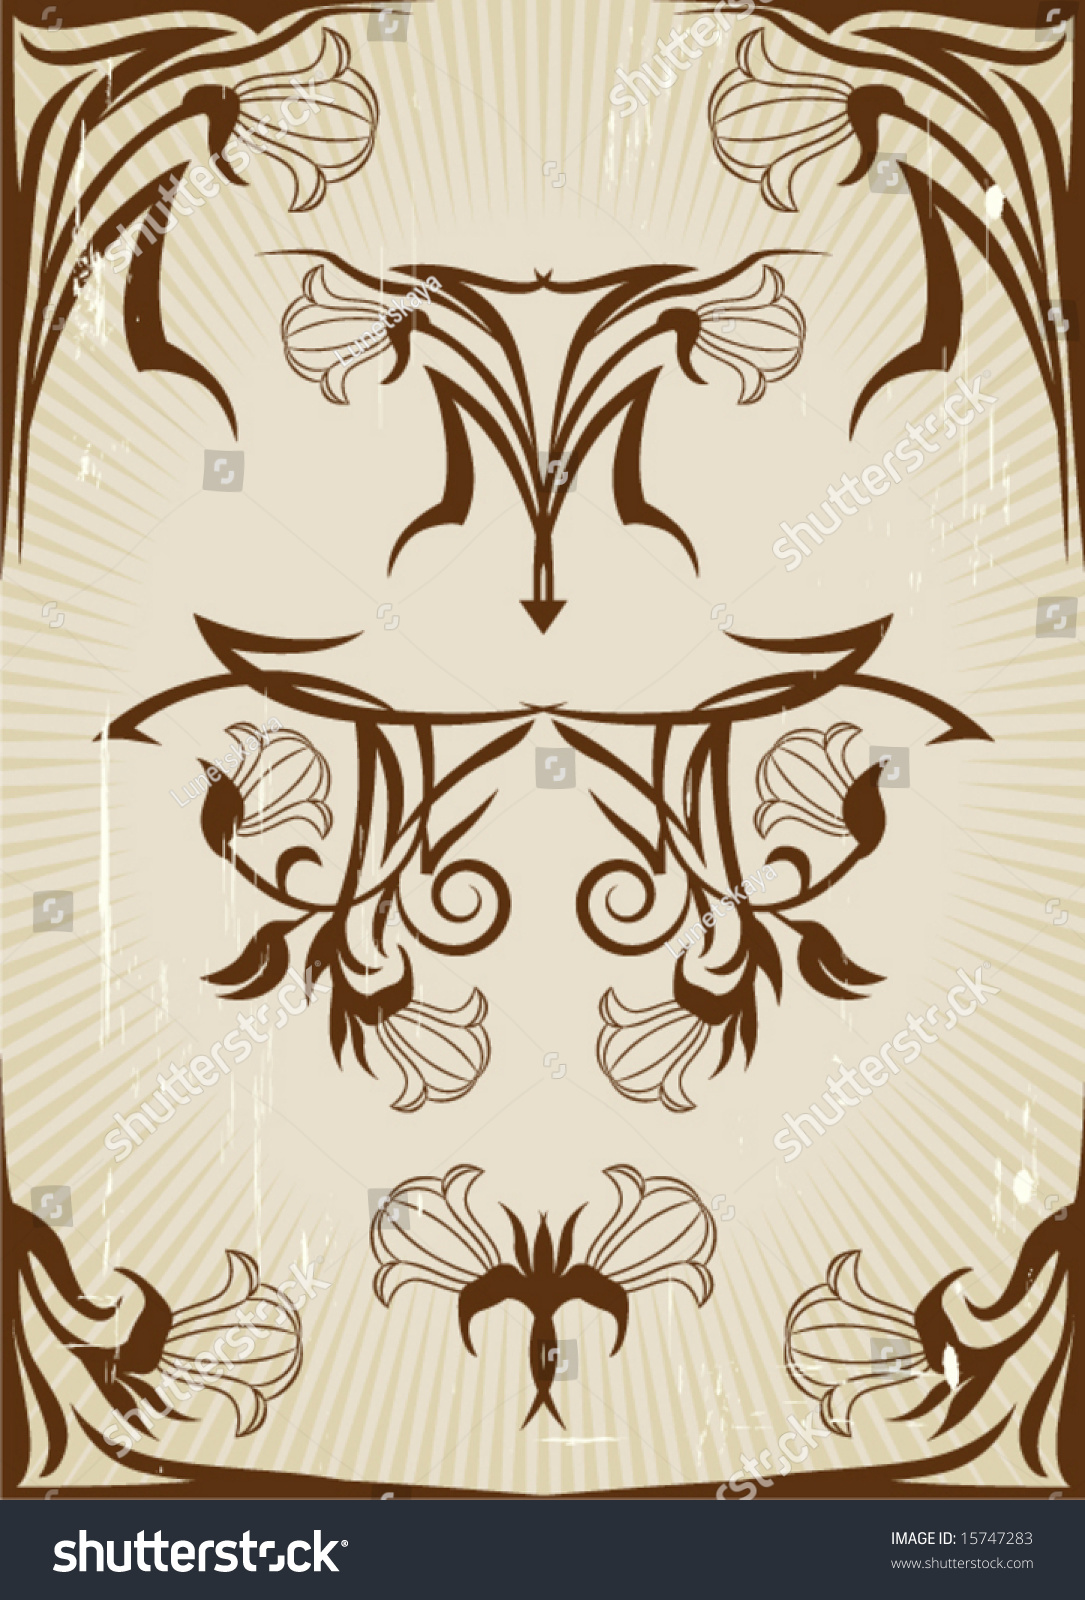 Art Nouveau Design Elements Stock Vector Illustration 15747283 ...